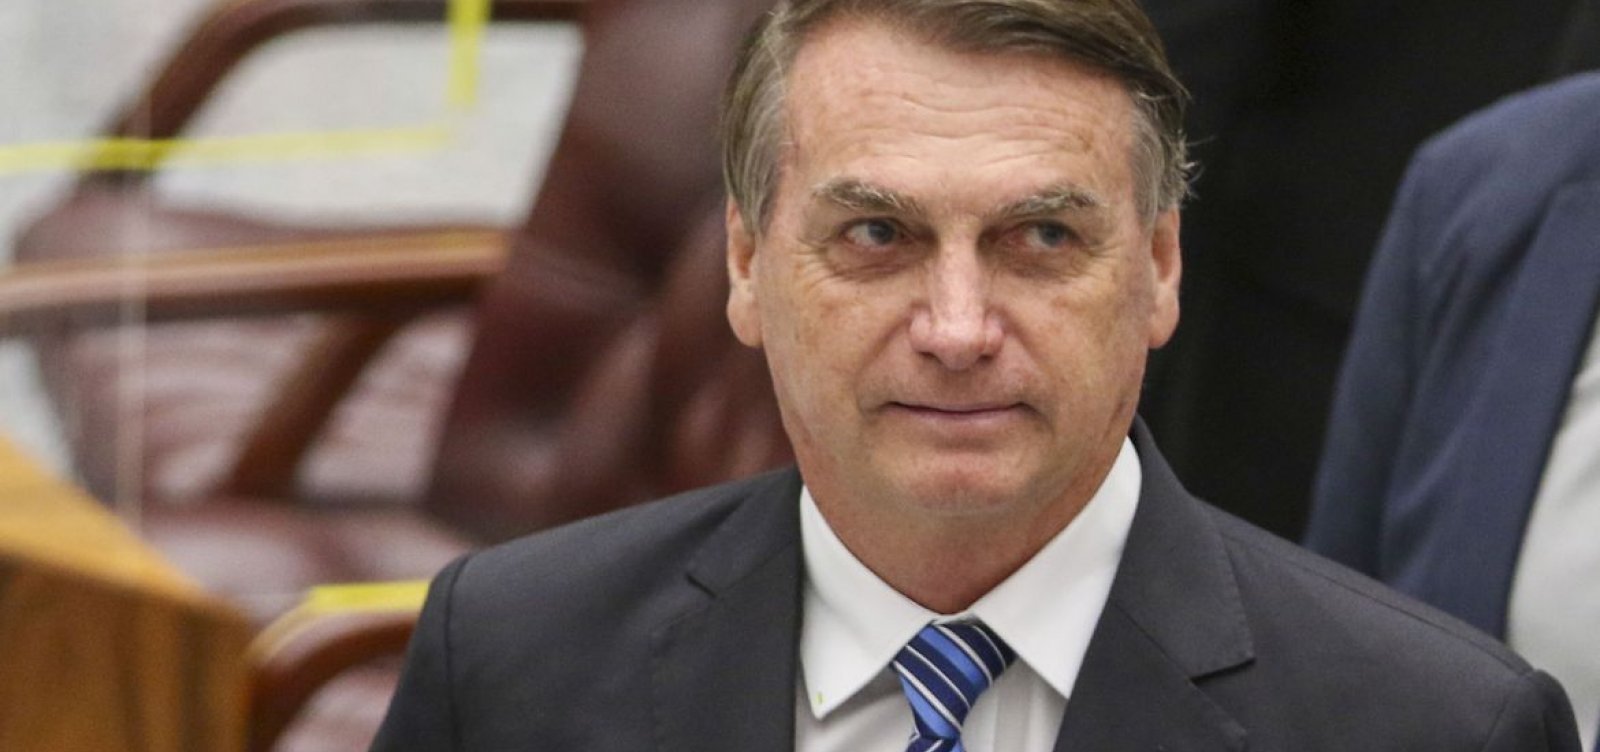 Cirurgias de Bolsonaro “transcorreram dentro da maior tranquilidade”, diz Wajngarten